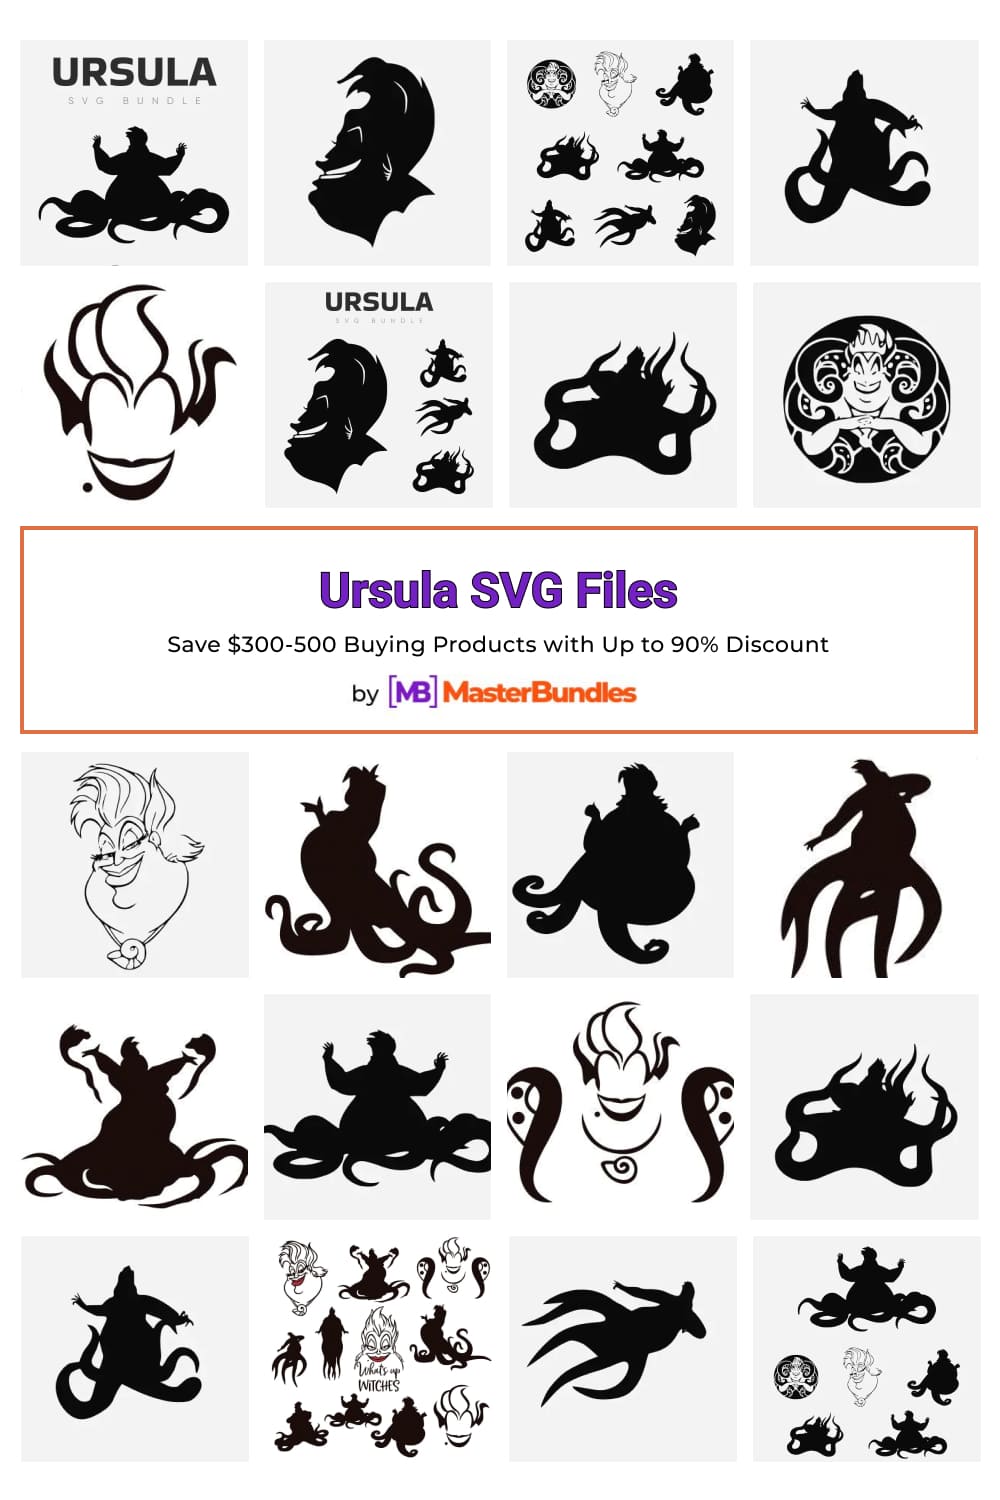 Ursula SVG Files for pinterest.